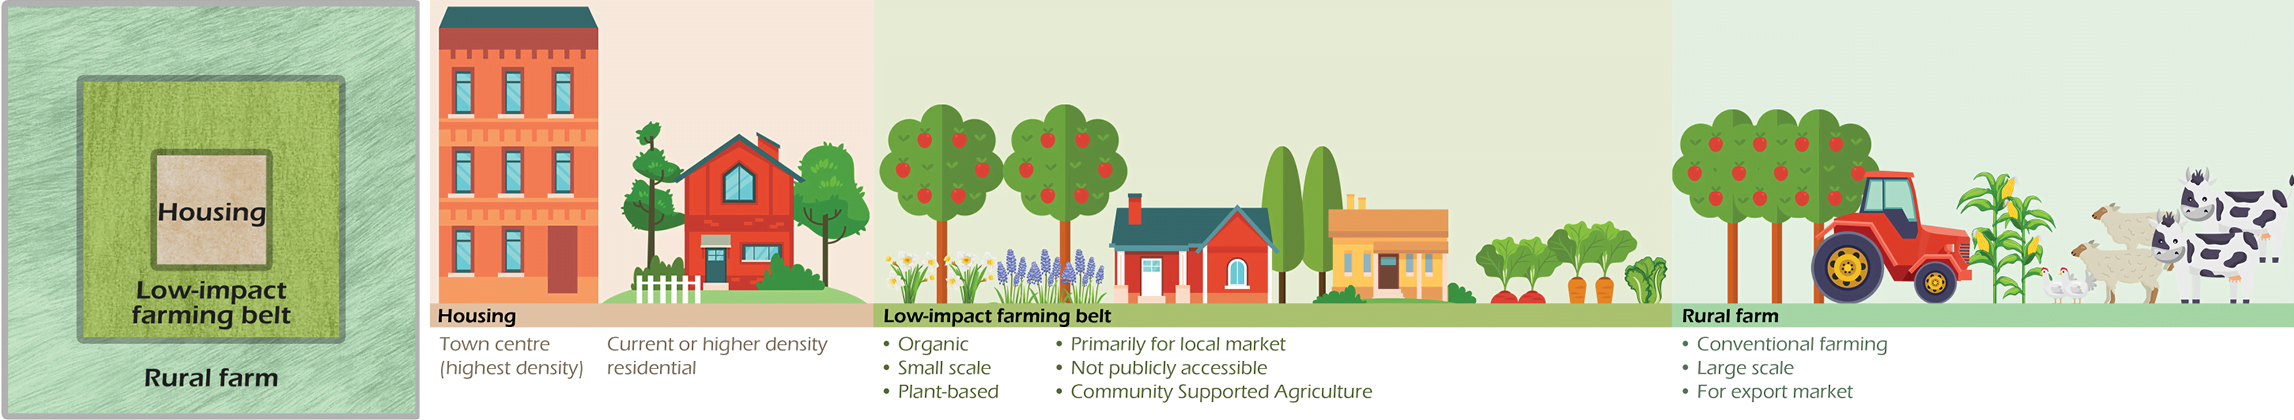 Peri-urban scenario 3: Low Impact farming belt 